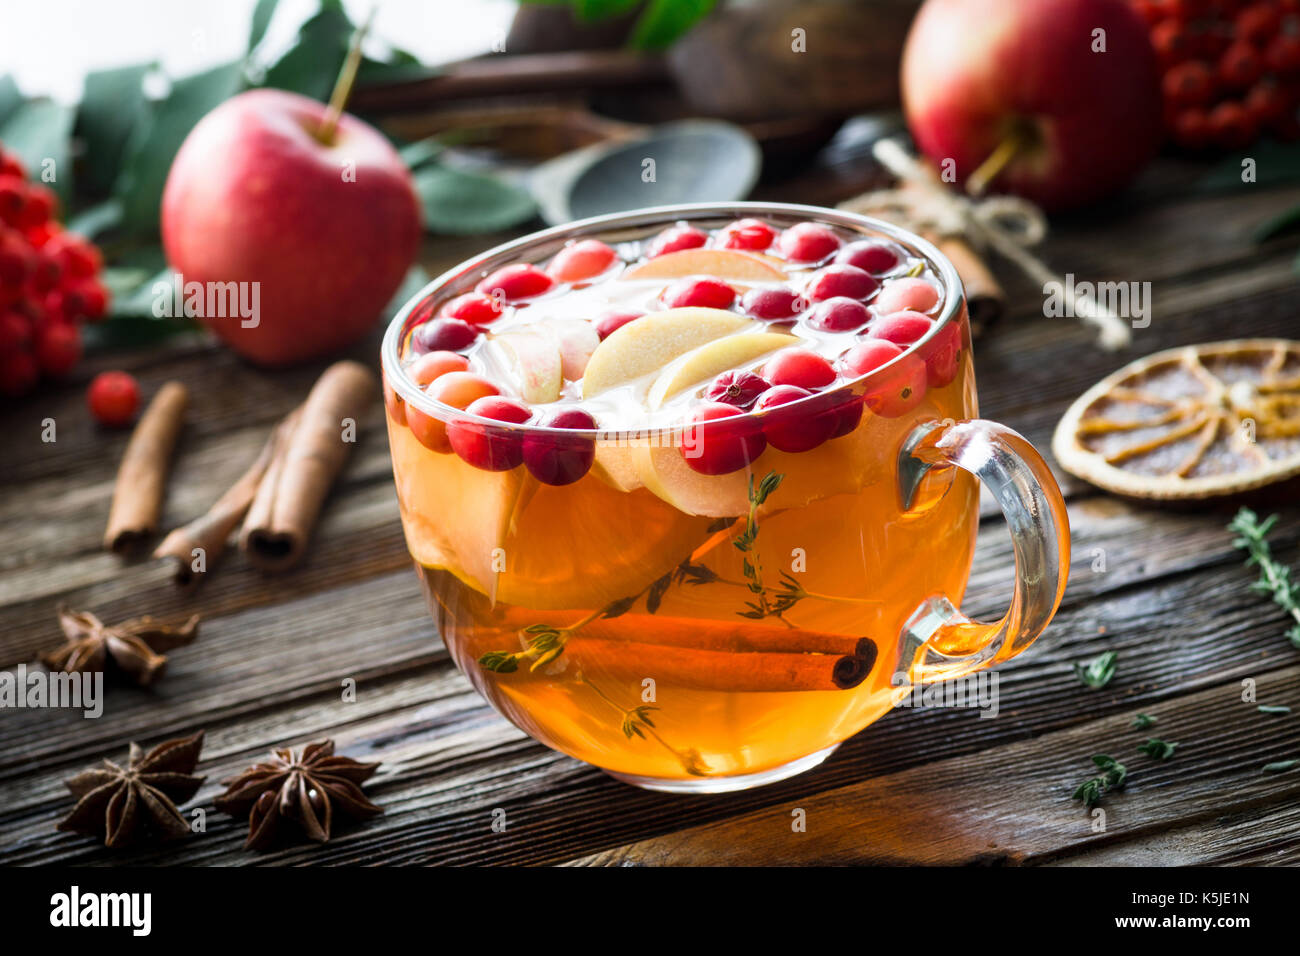 Plateau de fruits d'hiver et aux canneberges, pommes, cannelle, citron, miel et thym dans une tasse en verre sur la table en bois. Vue rapprochée, horizontale Banque D'Images